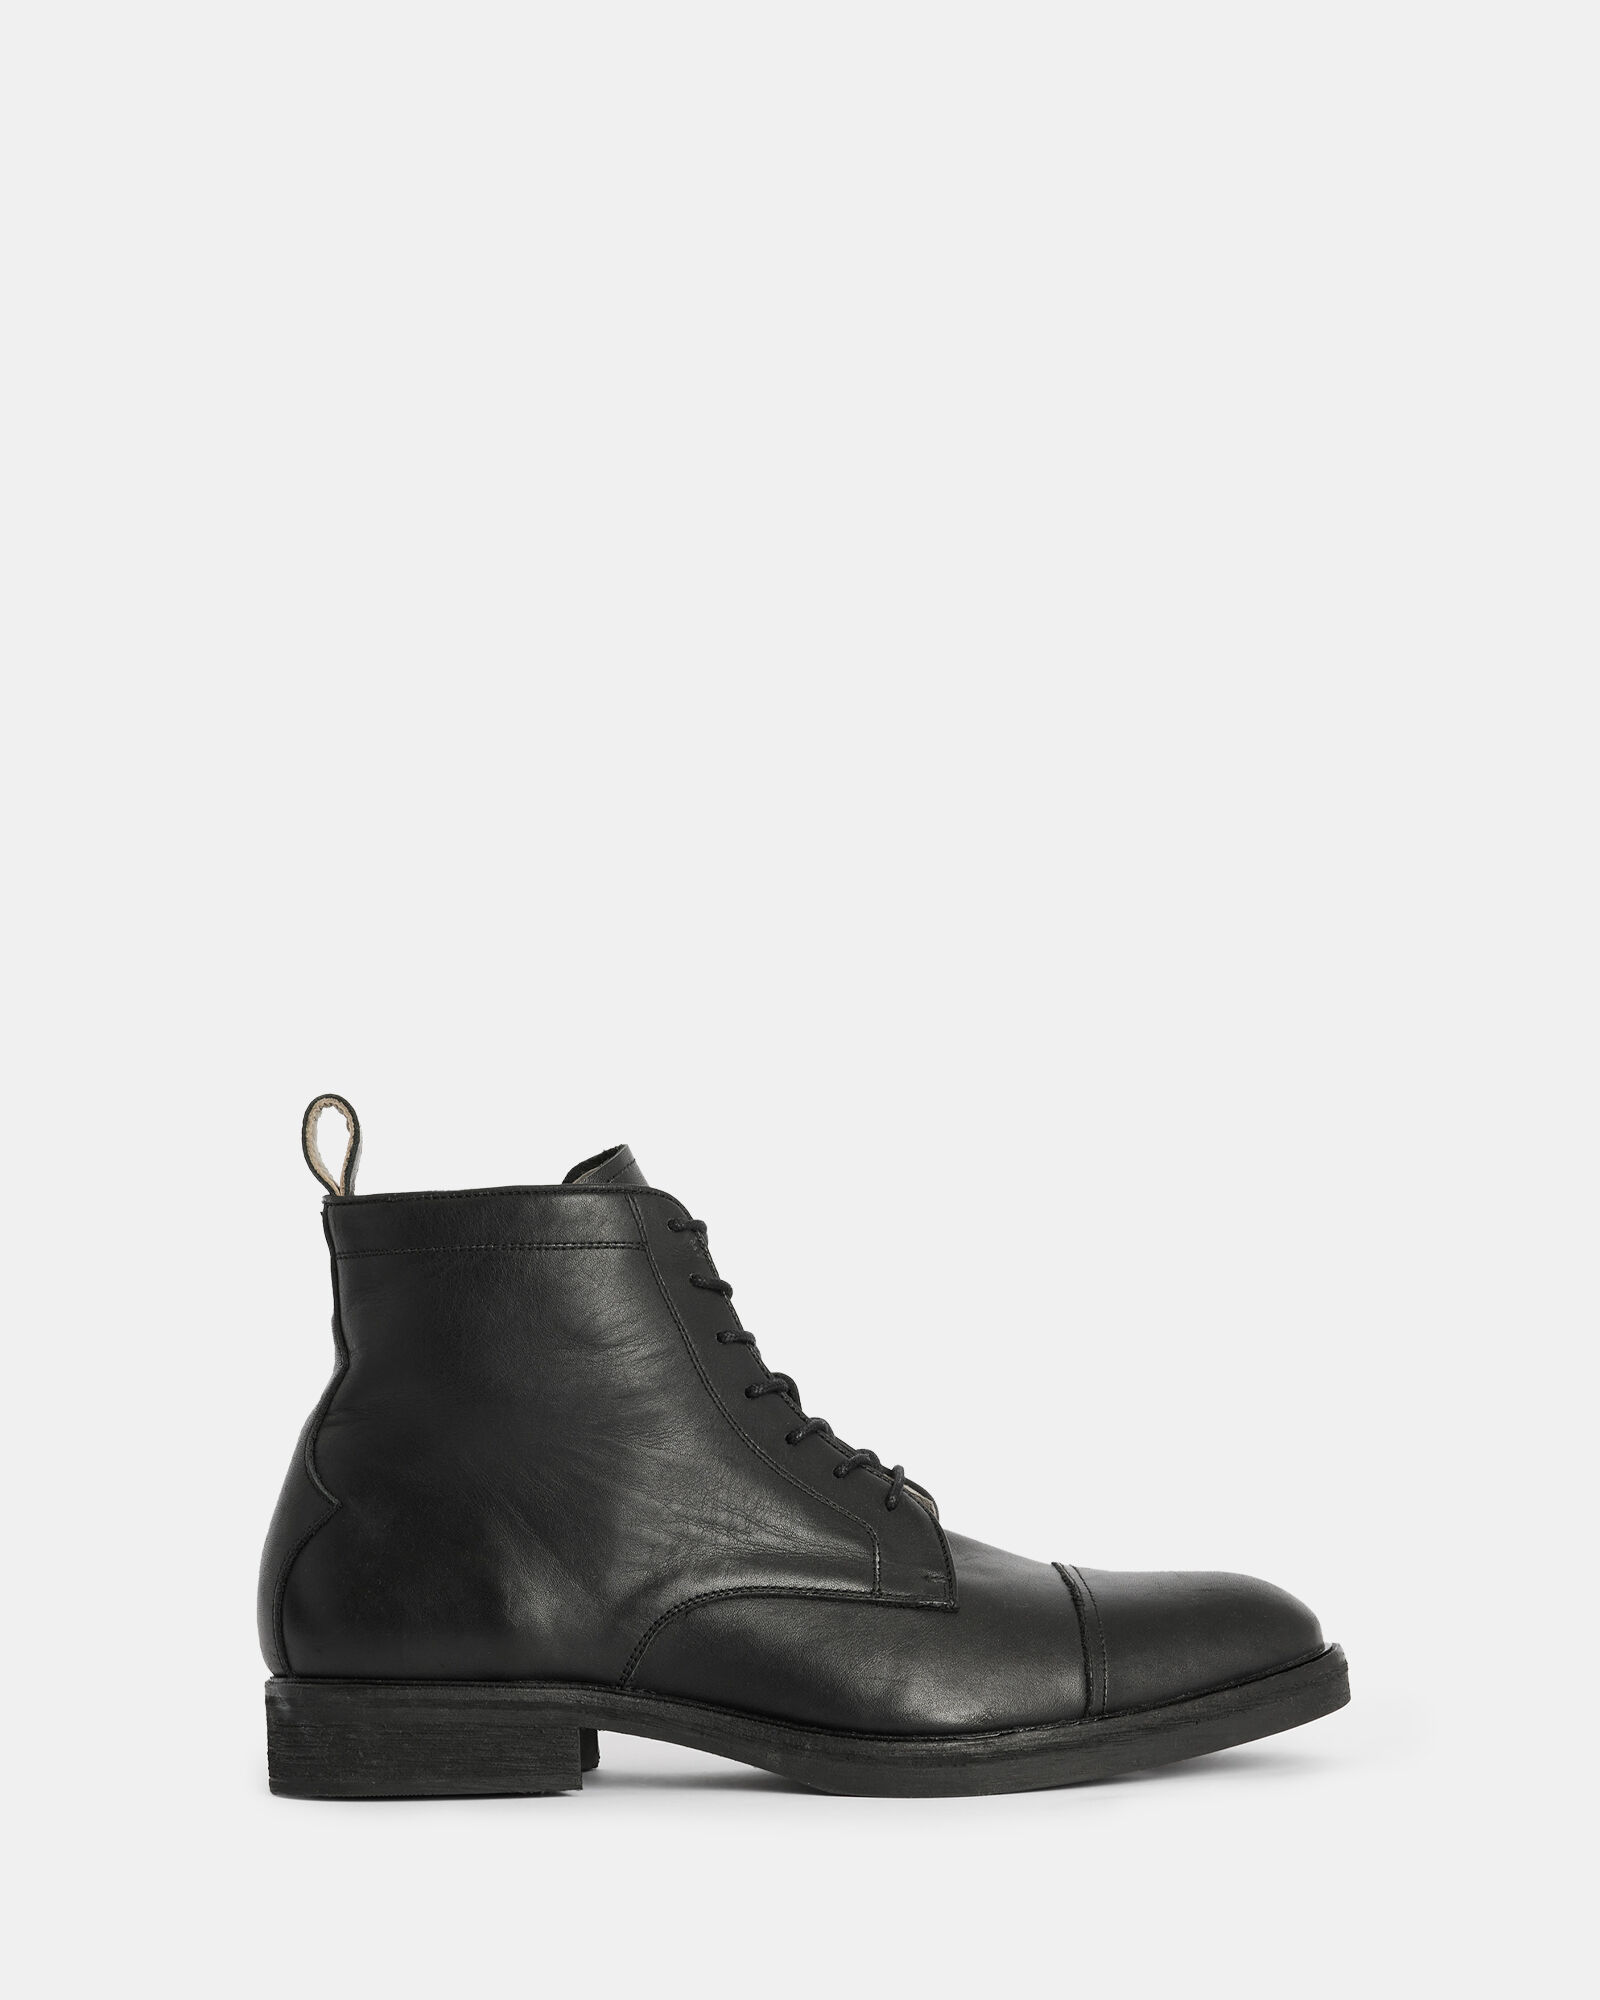 Men's Leather Boots | ALLSAINTS US